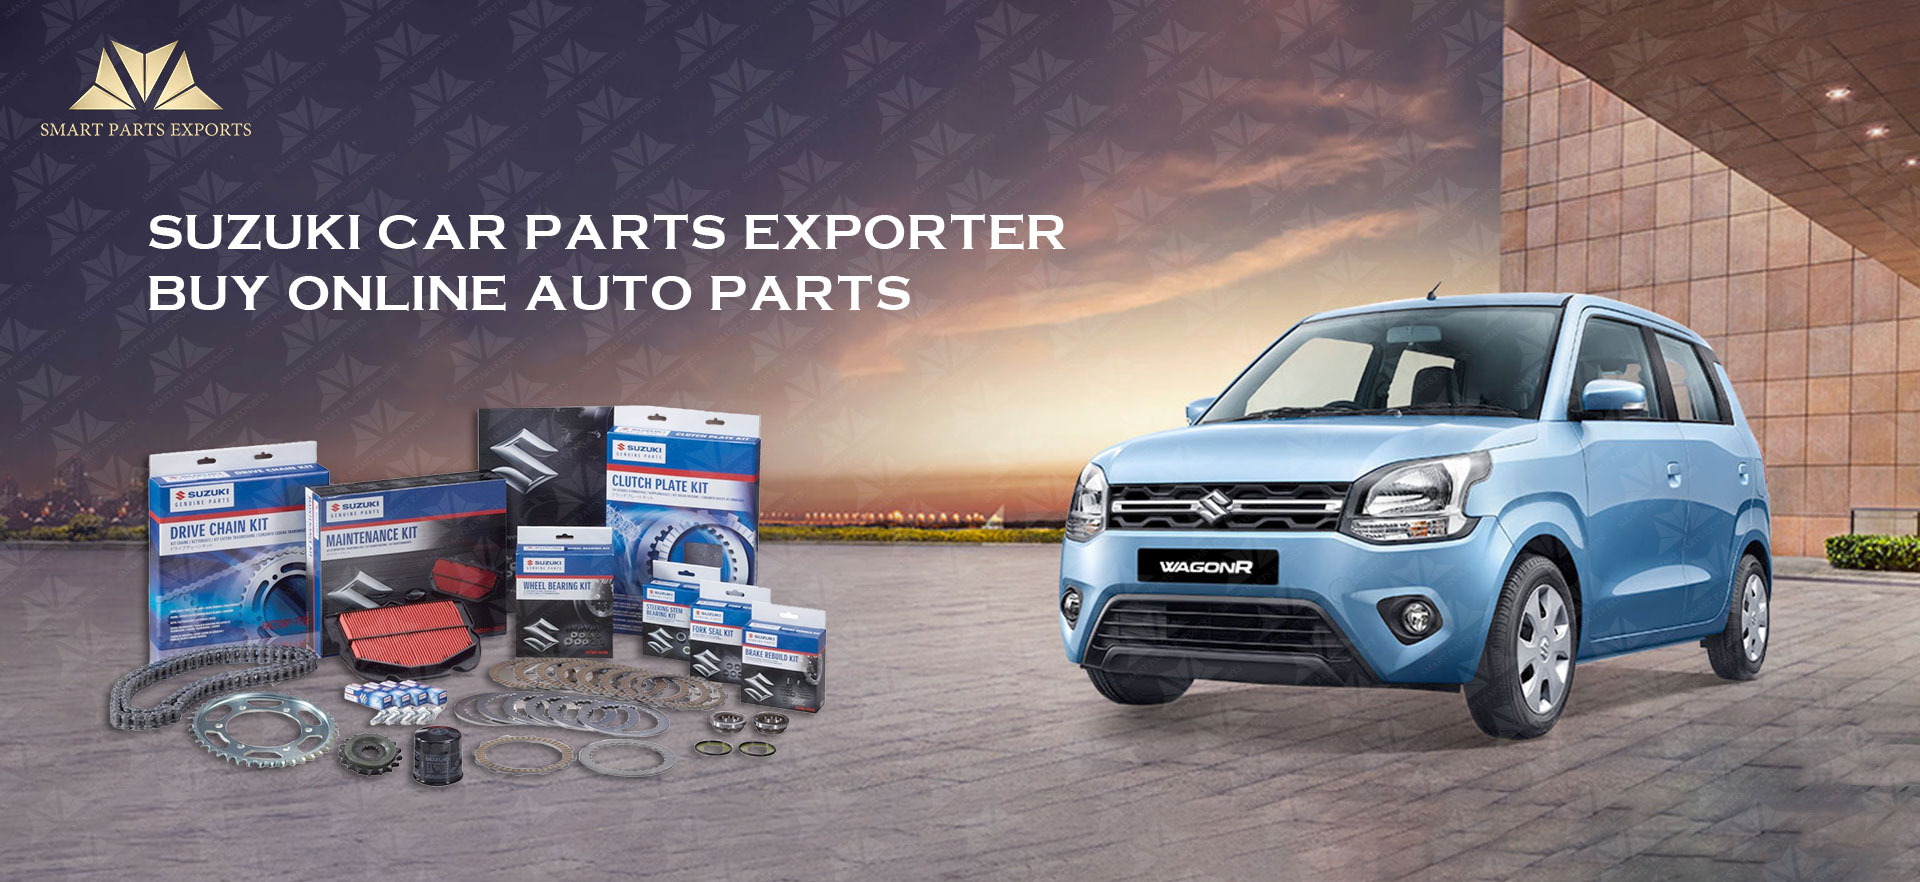 Suzuki Car Parts Exporter - Buy Online Auto Parts